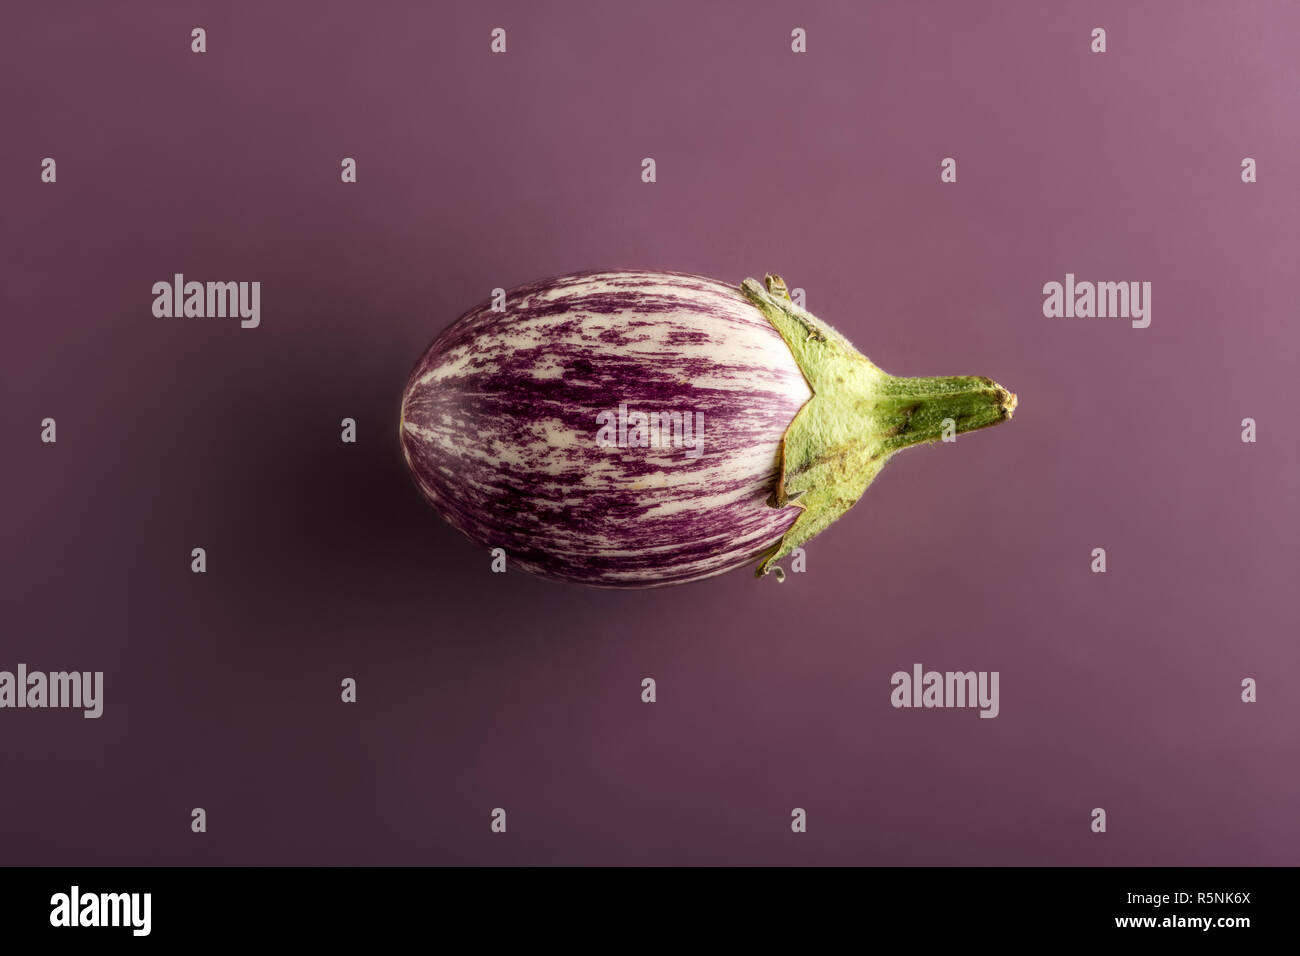 Eine kleine Aubergine oder eierfrucht in enger gesehen - von seiner Seite, in der Mitte auf Violett Hintergrund isoliert Stockfoto